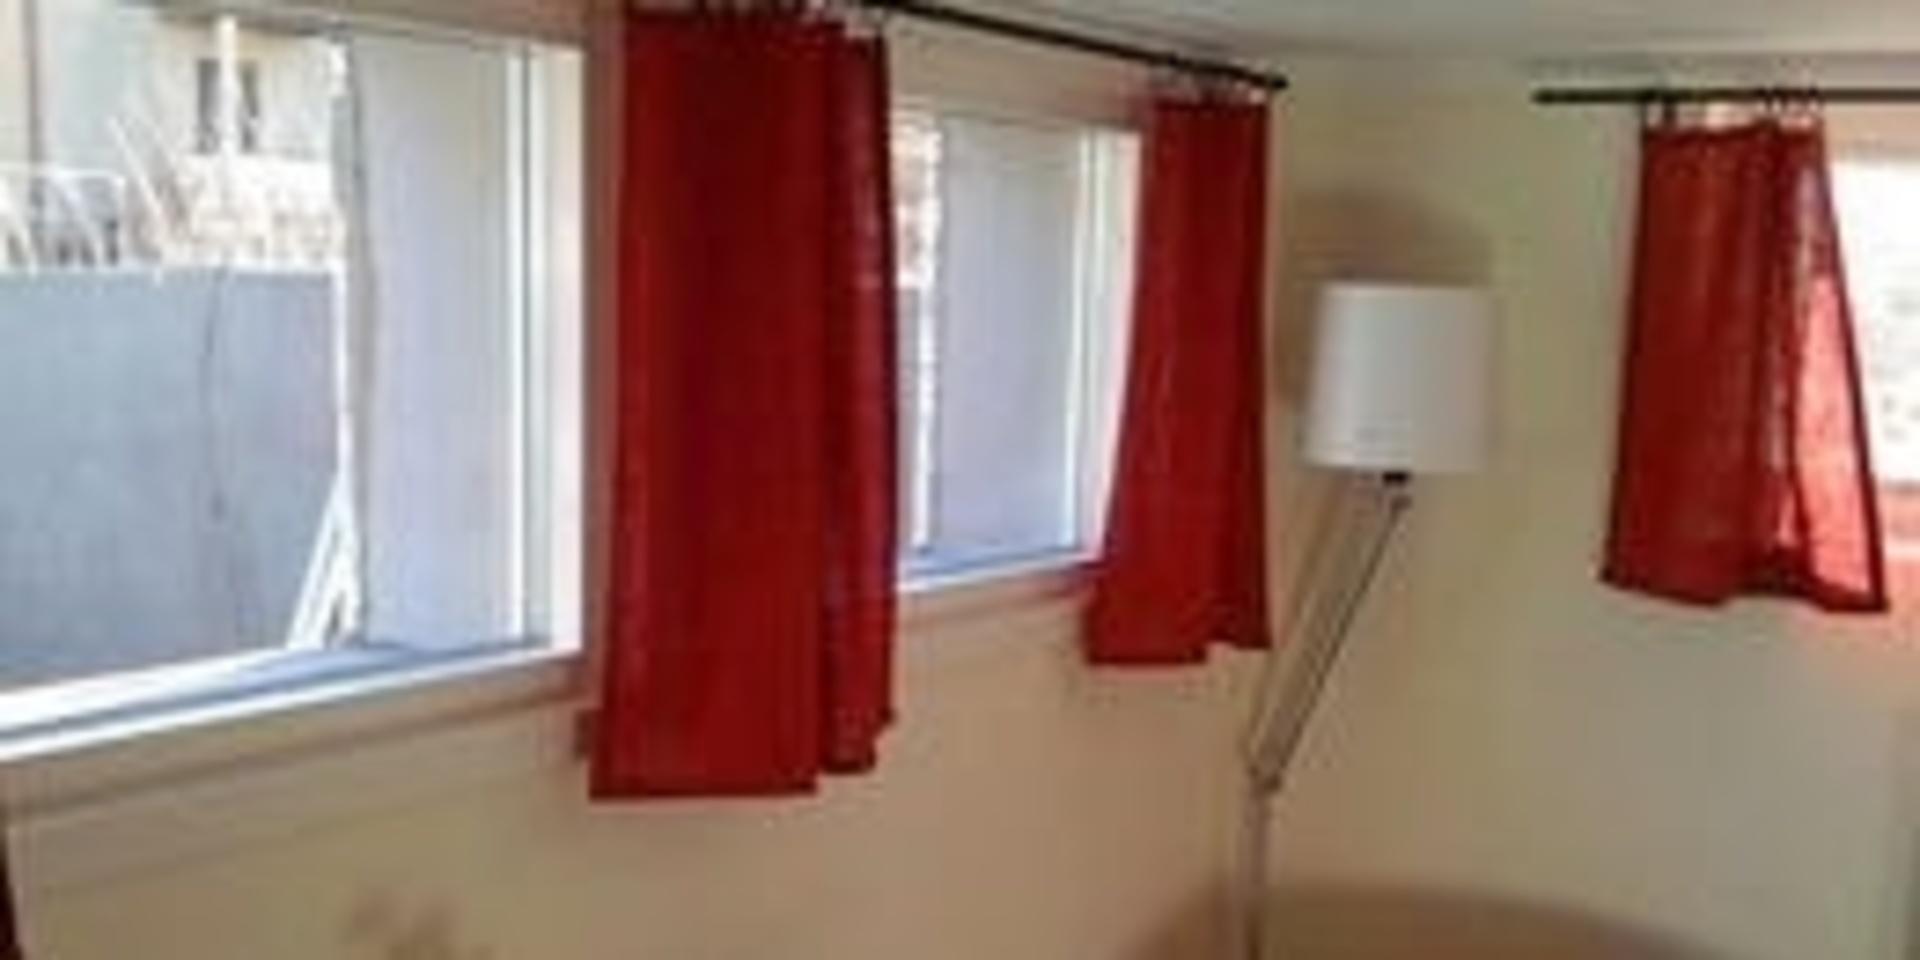 På sin Facebook har Morgan Gripson lagt upp foton där man ser att hans rum i källaren har extra stora fönster, som ger dagsljusinsläpp och kan användas för utrymning.